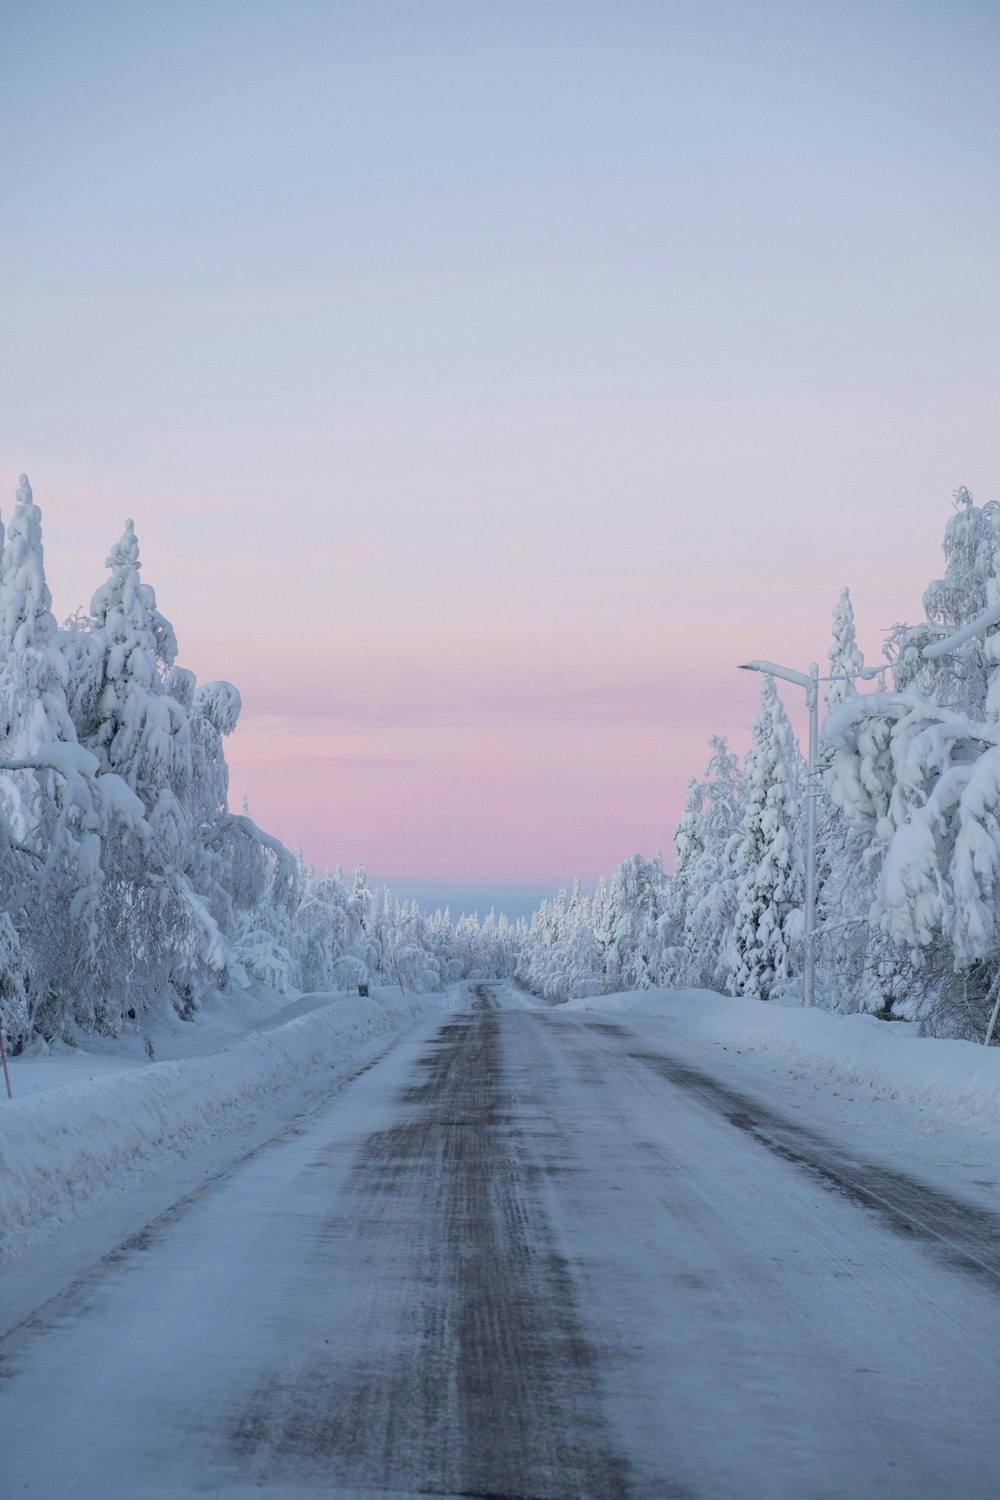 árboles cubiertos de nieve y camino durante el día